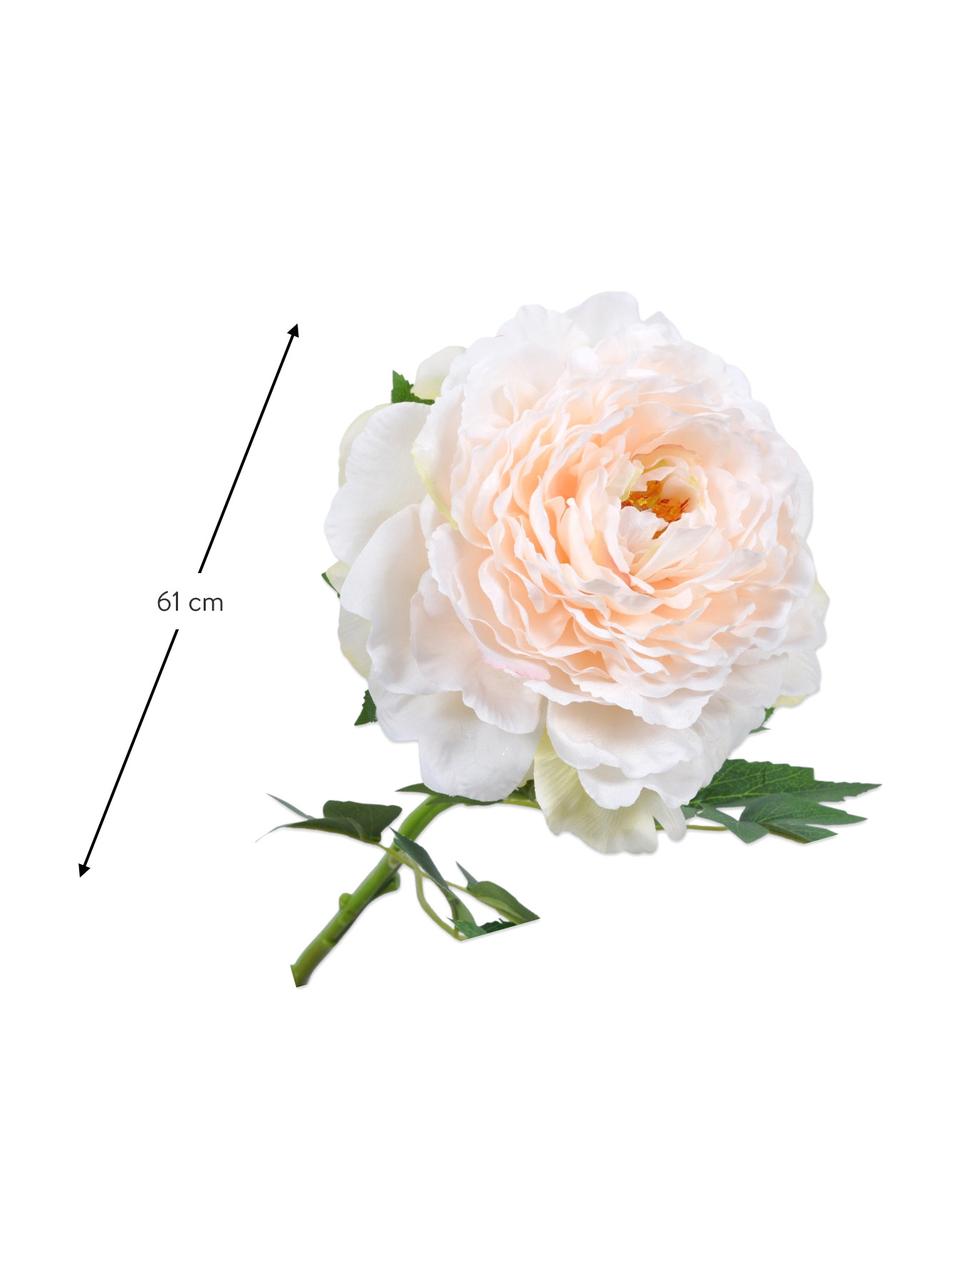 Květinová dekorace pivoňka, bílá/růžová, Umělá hmota, kovový drát, Bílá, růžová, D 61 cm